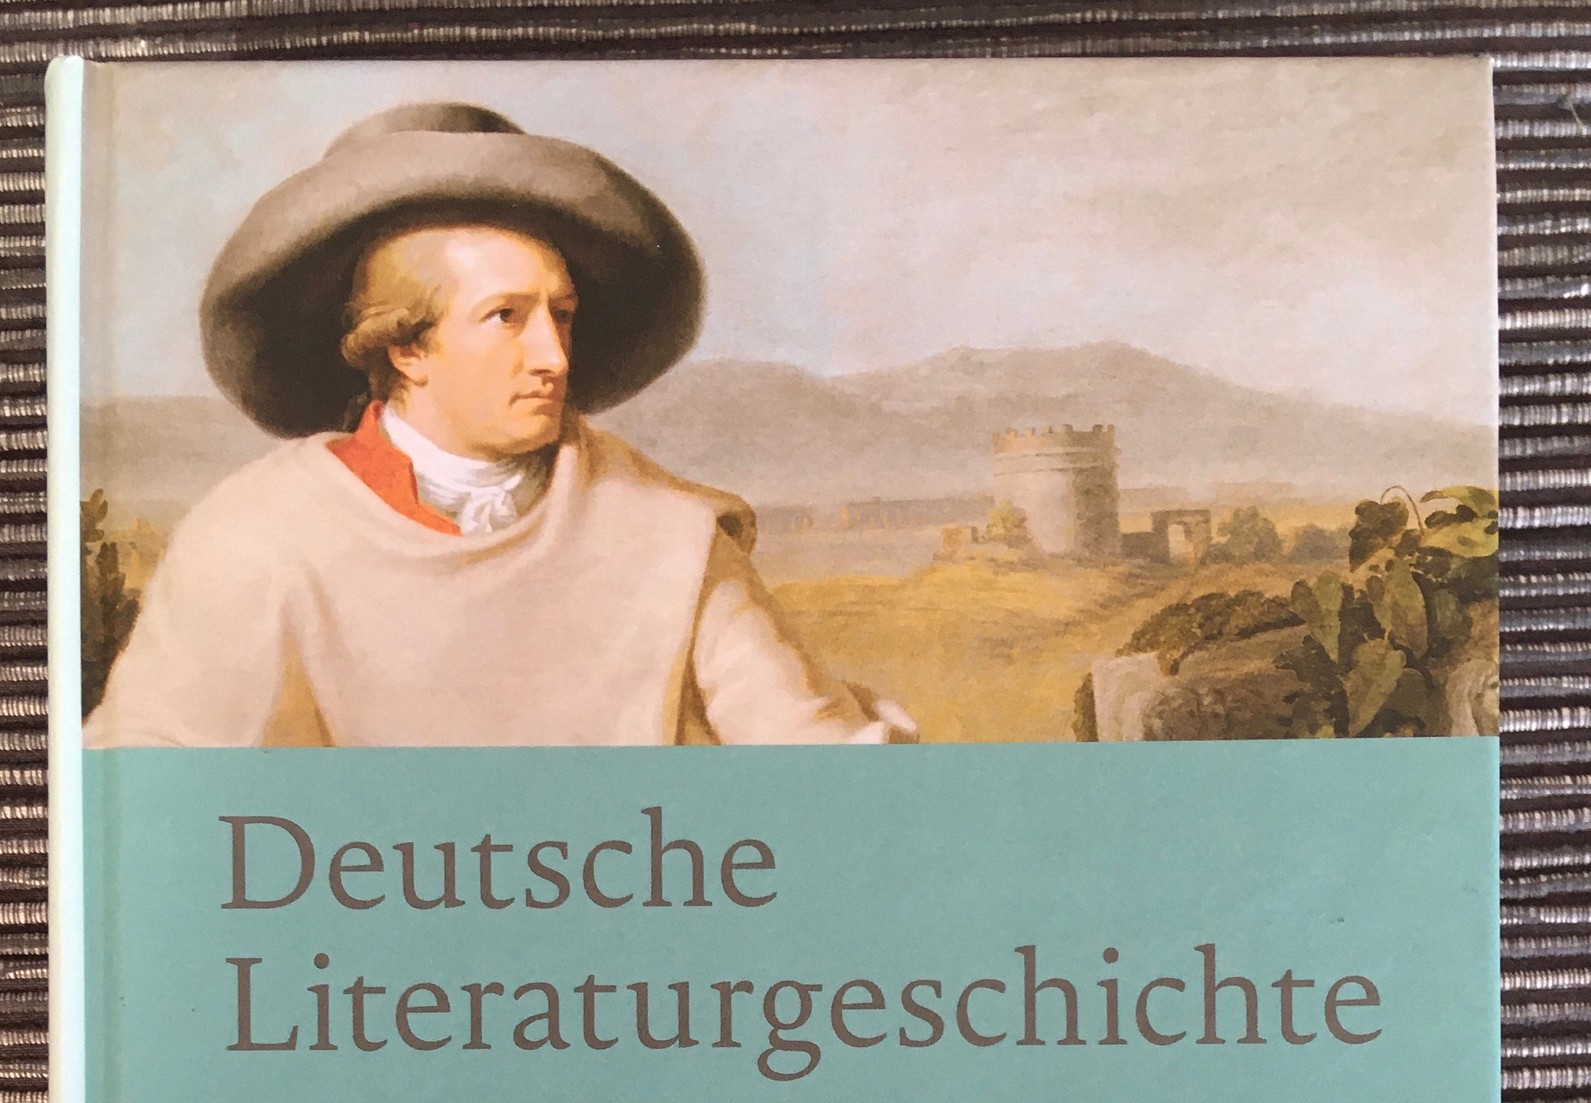 GER-CC-512: Sprache und Literatur- I